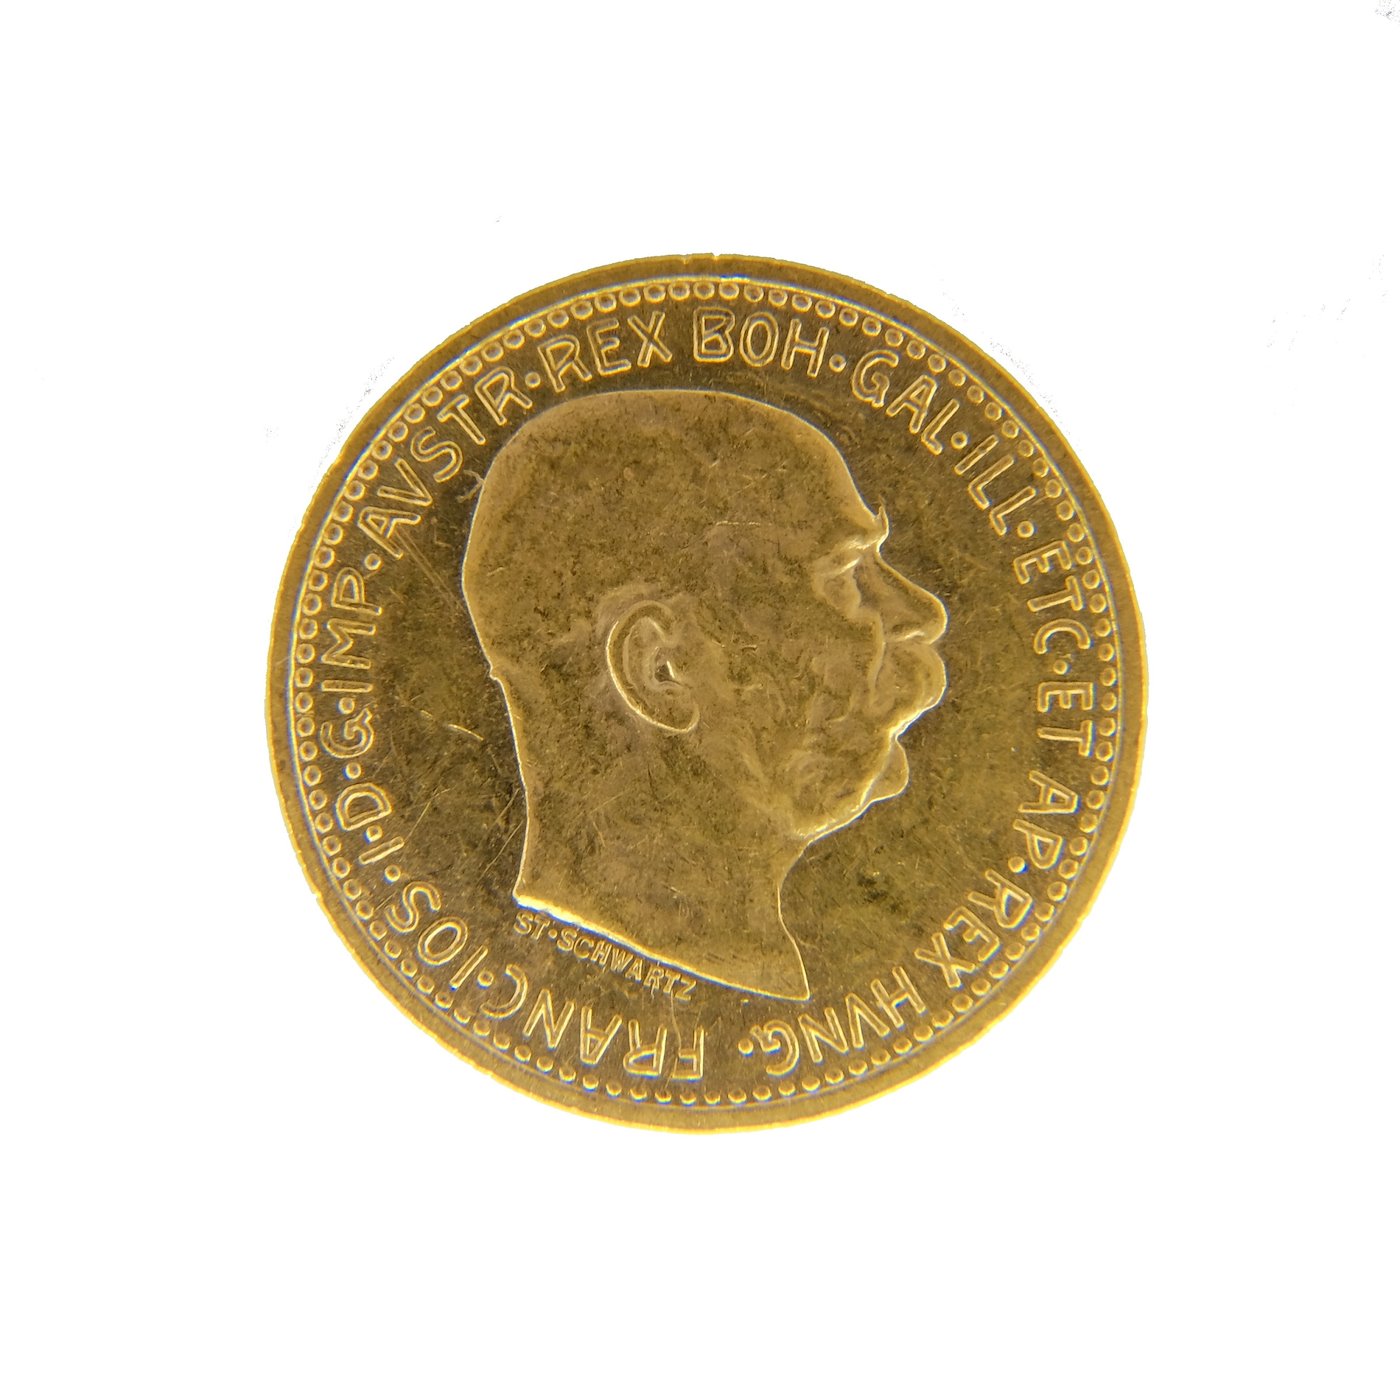 .. - Rakousko Uhersko zlatá 10 Koruna 1911 rakouská, zlato 900/1000, hrubá hmotnost mince 3,387g.